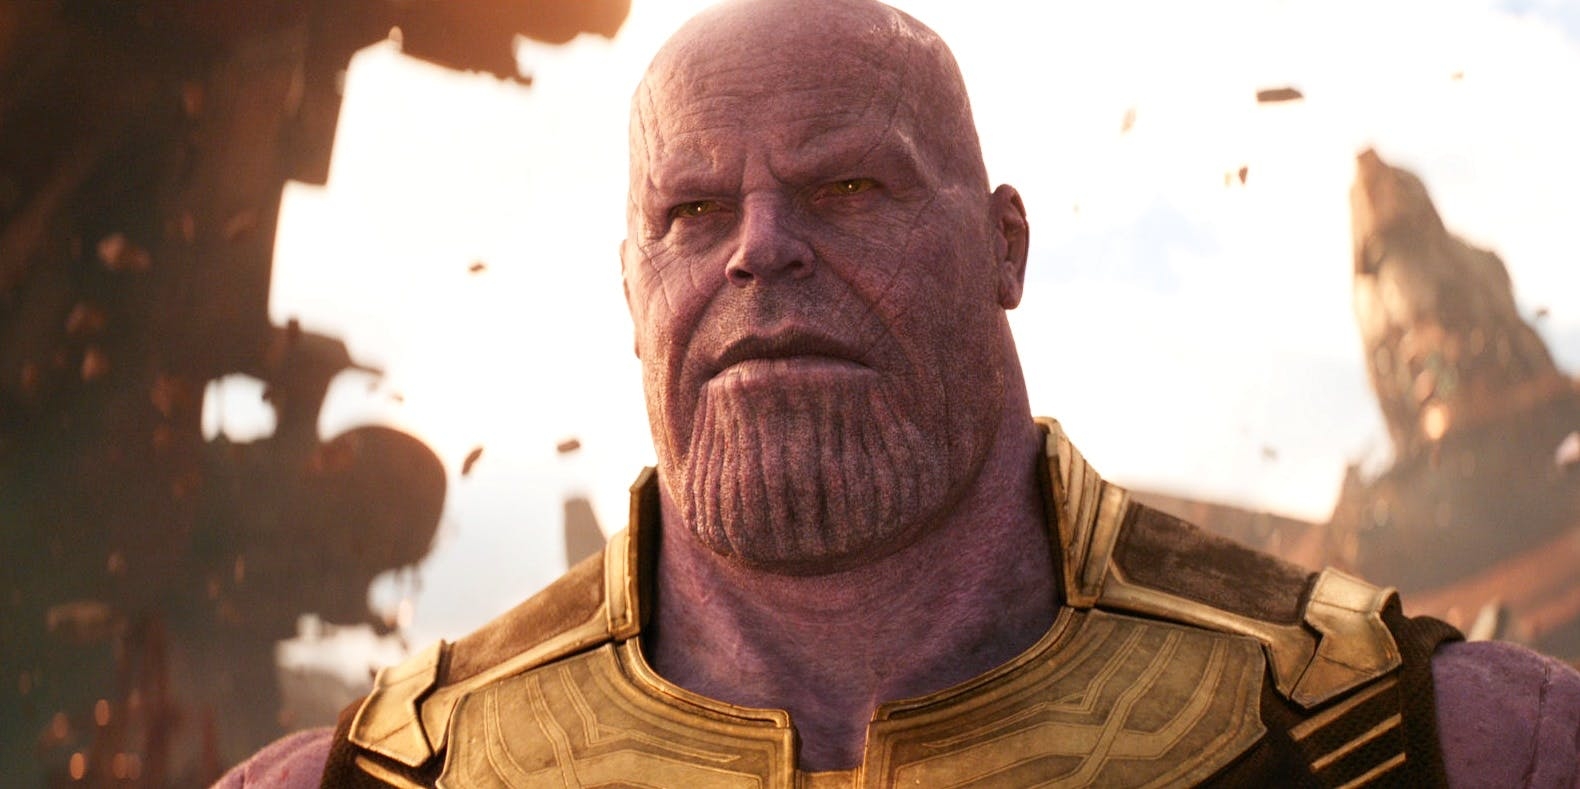 แท้จริงแล้ว Thanos เพลิดเพลินเมื่อเห็นตัวเองถูก Avengers ฆ่าใน Endgame!